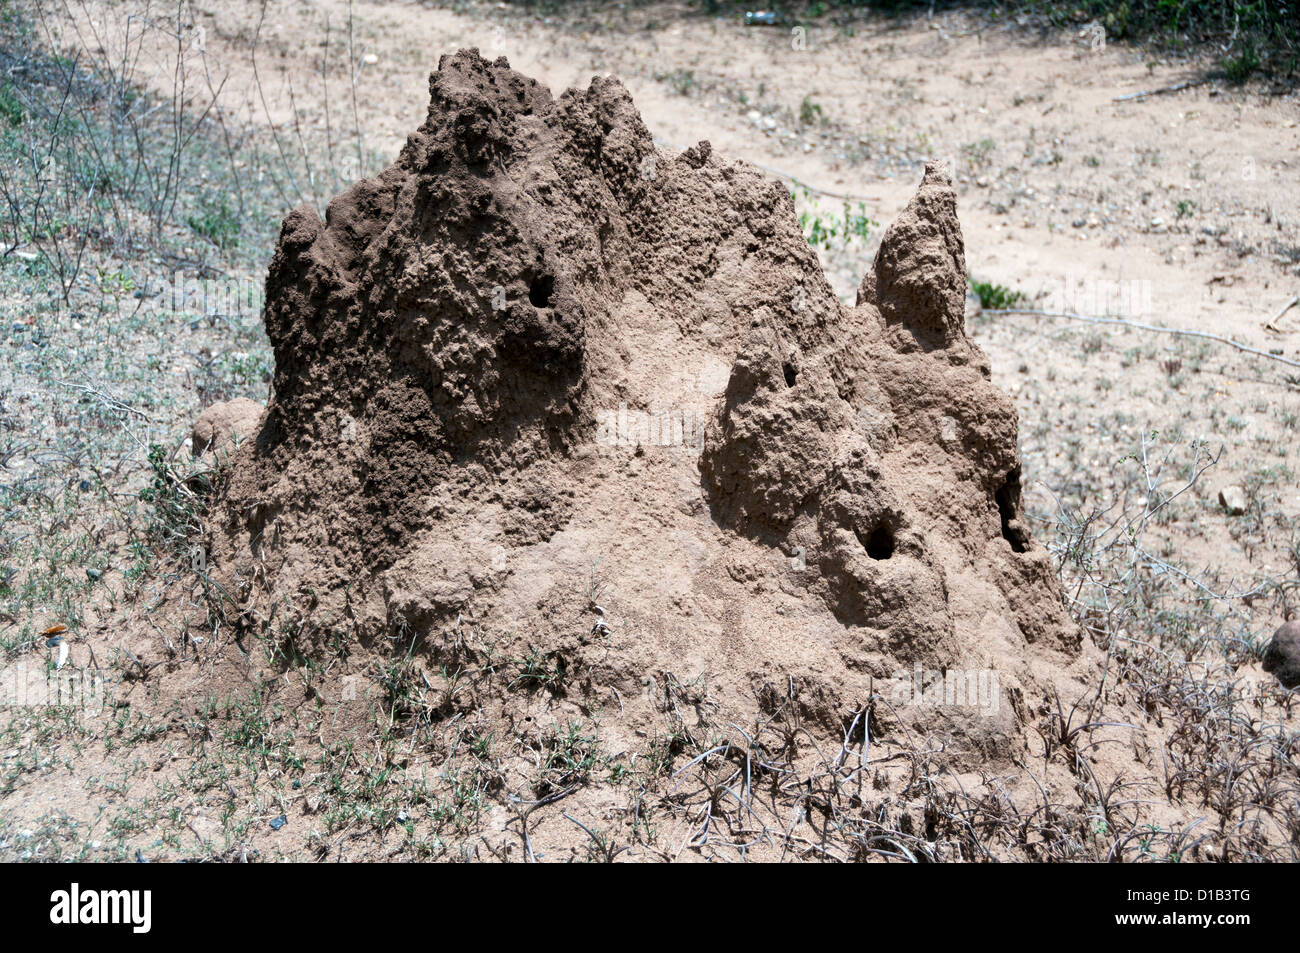 Termite mound, Kerala, India Stock Photo